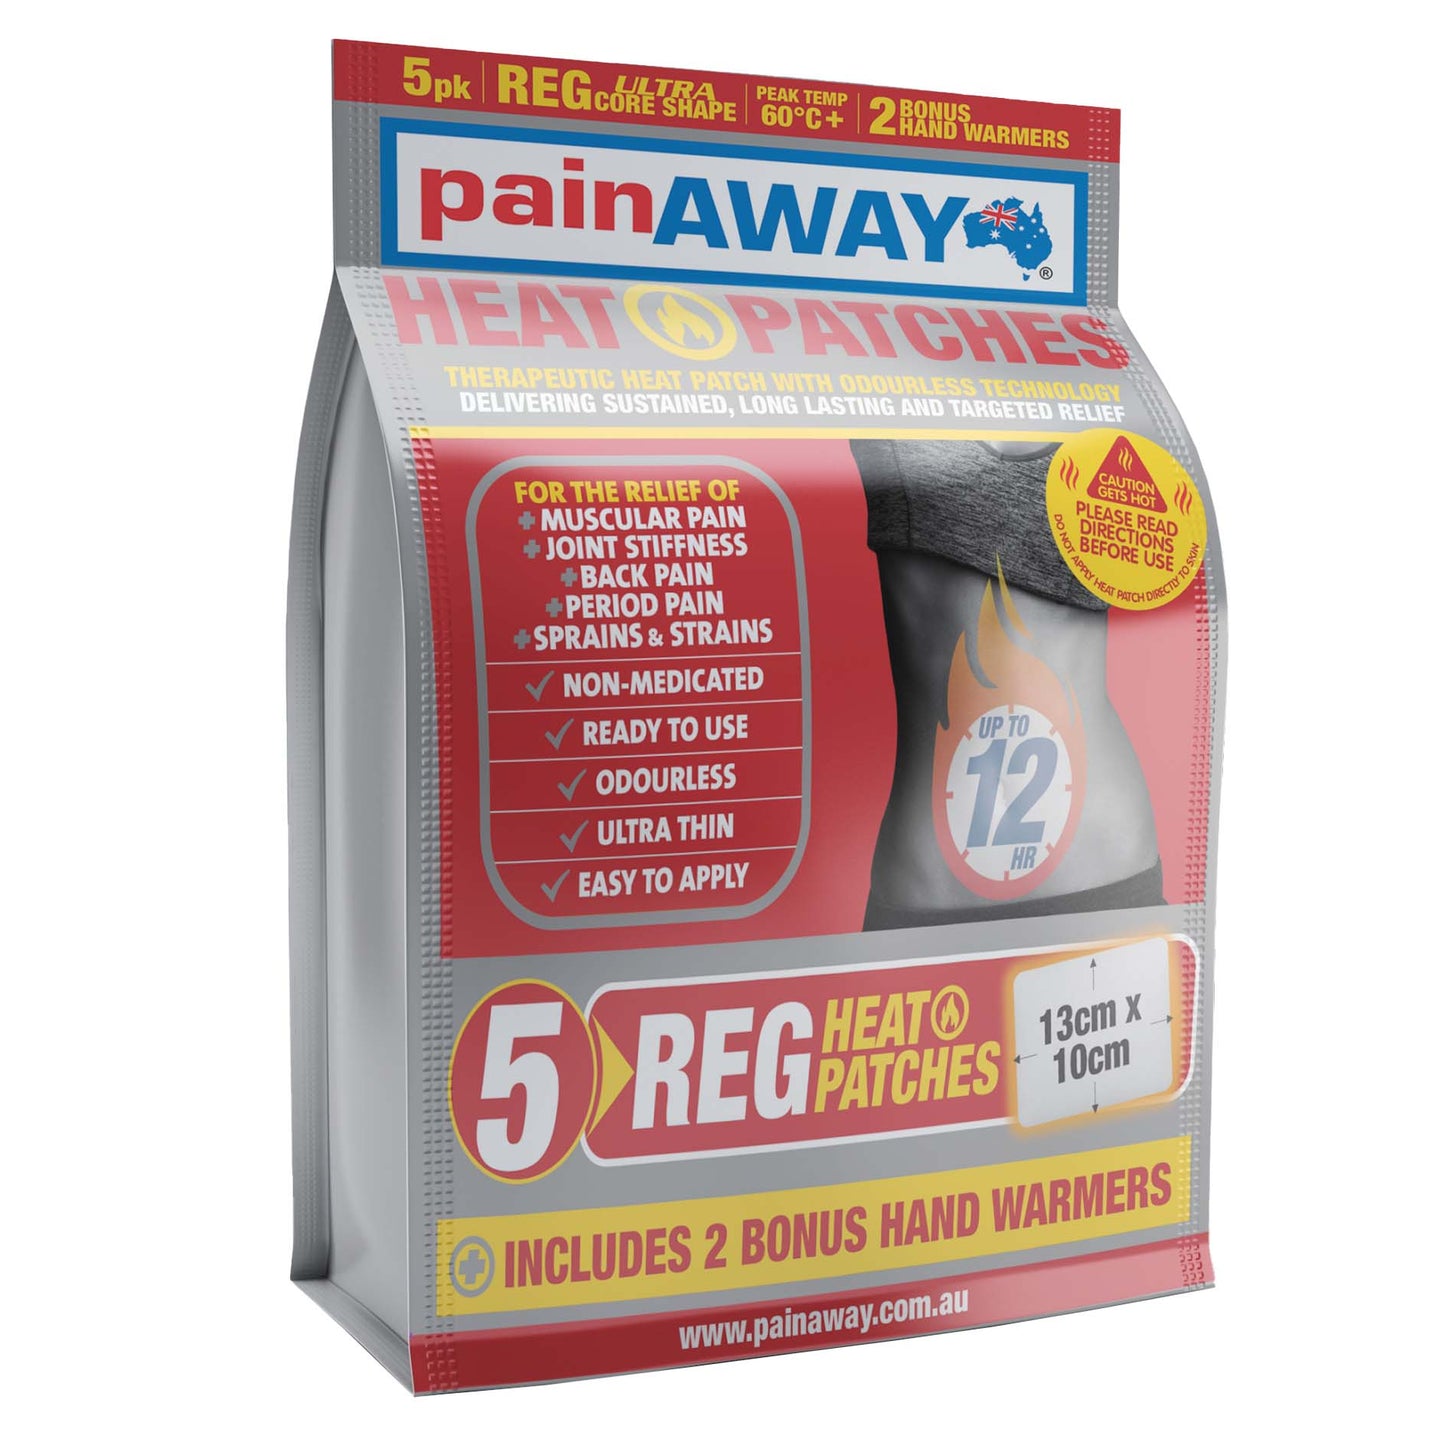 PAIN AWAY HEAT PATCH REGULAR 5 PACK